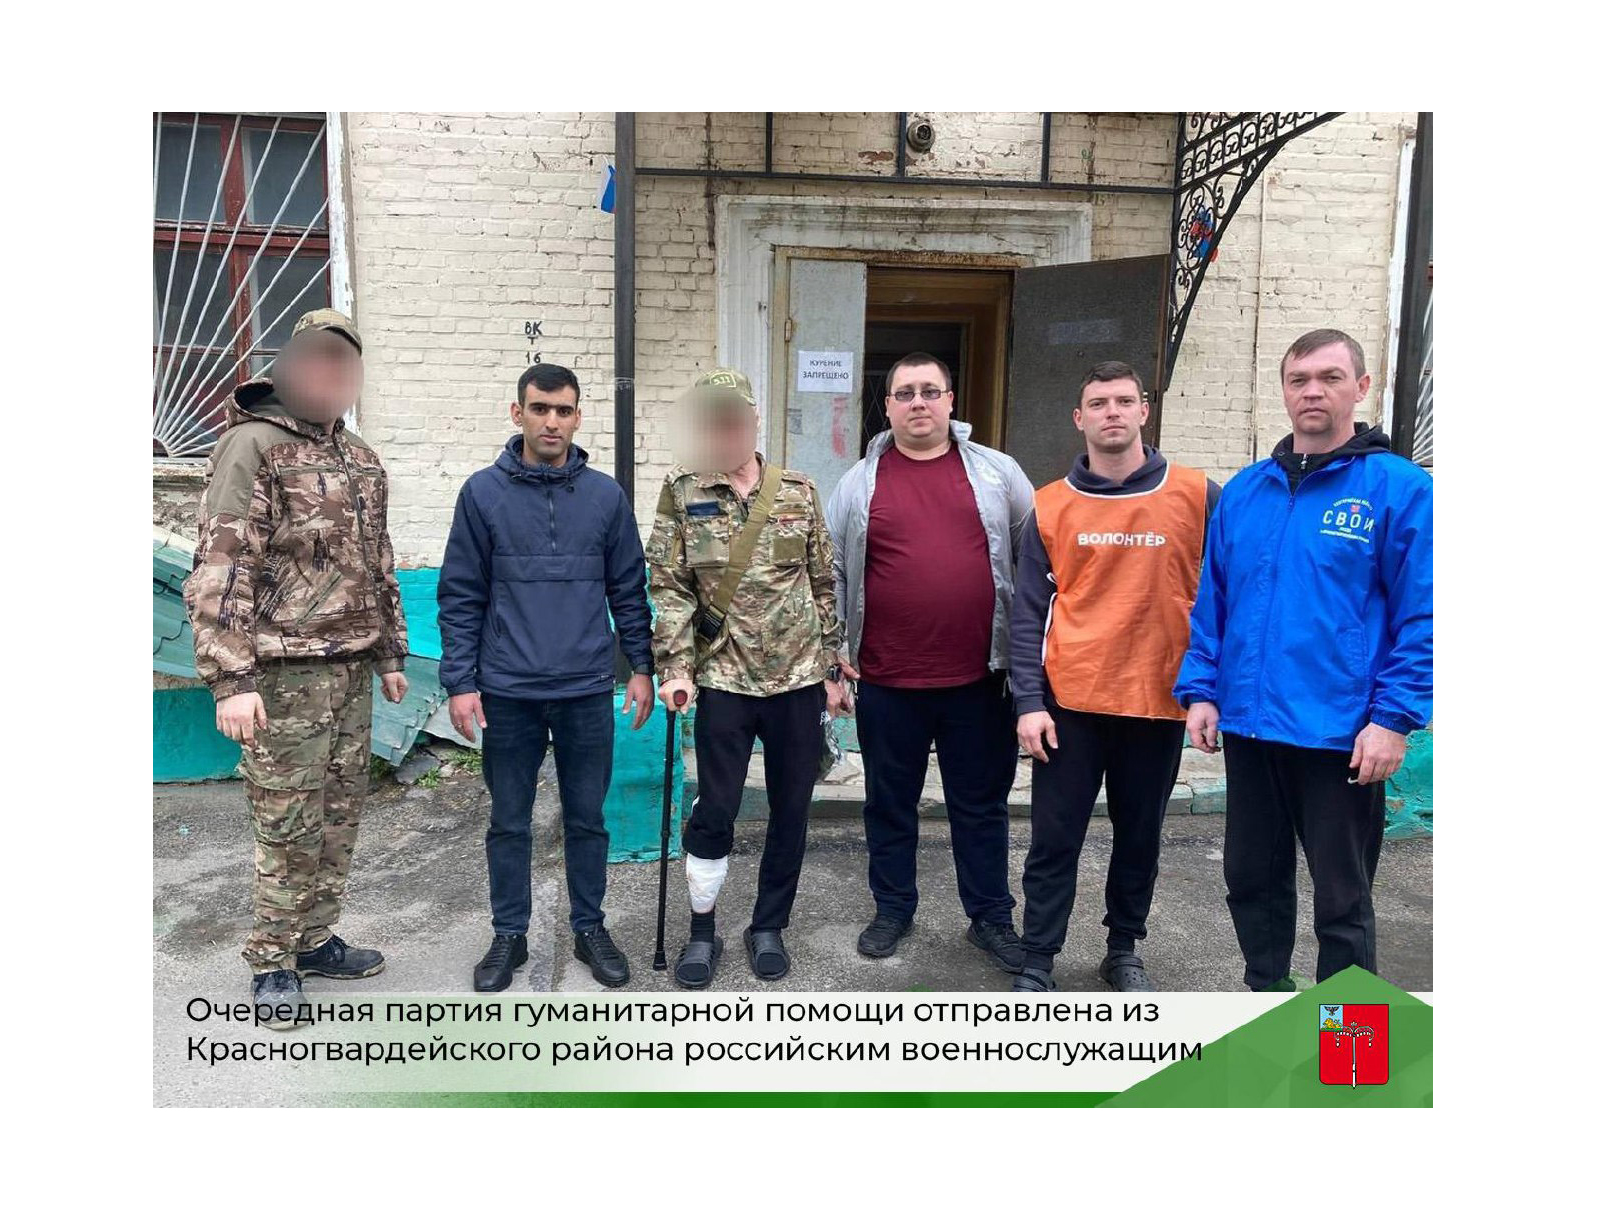 Очередная партия гуманитарной помощи отправлена из Красногвардейского района российским военнослужащим.